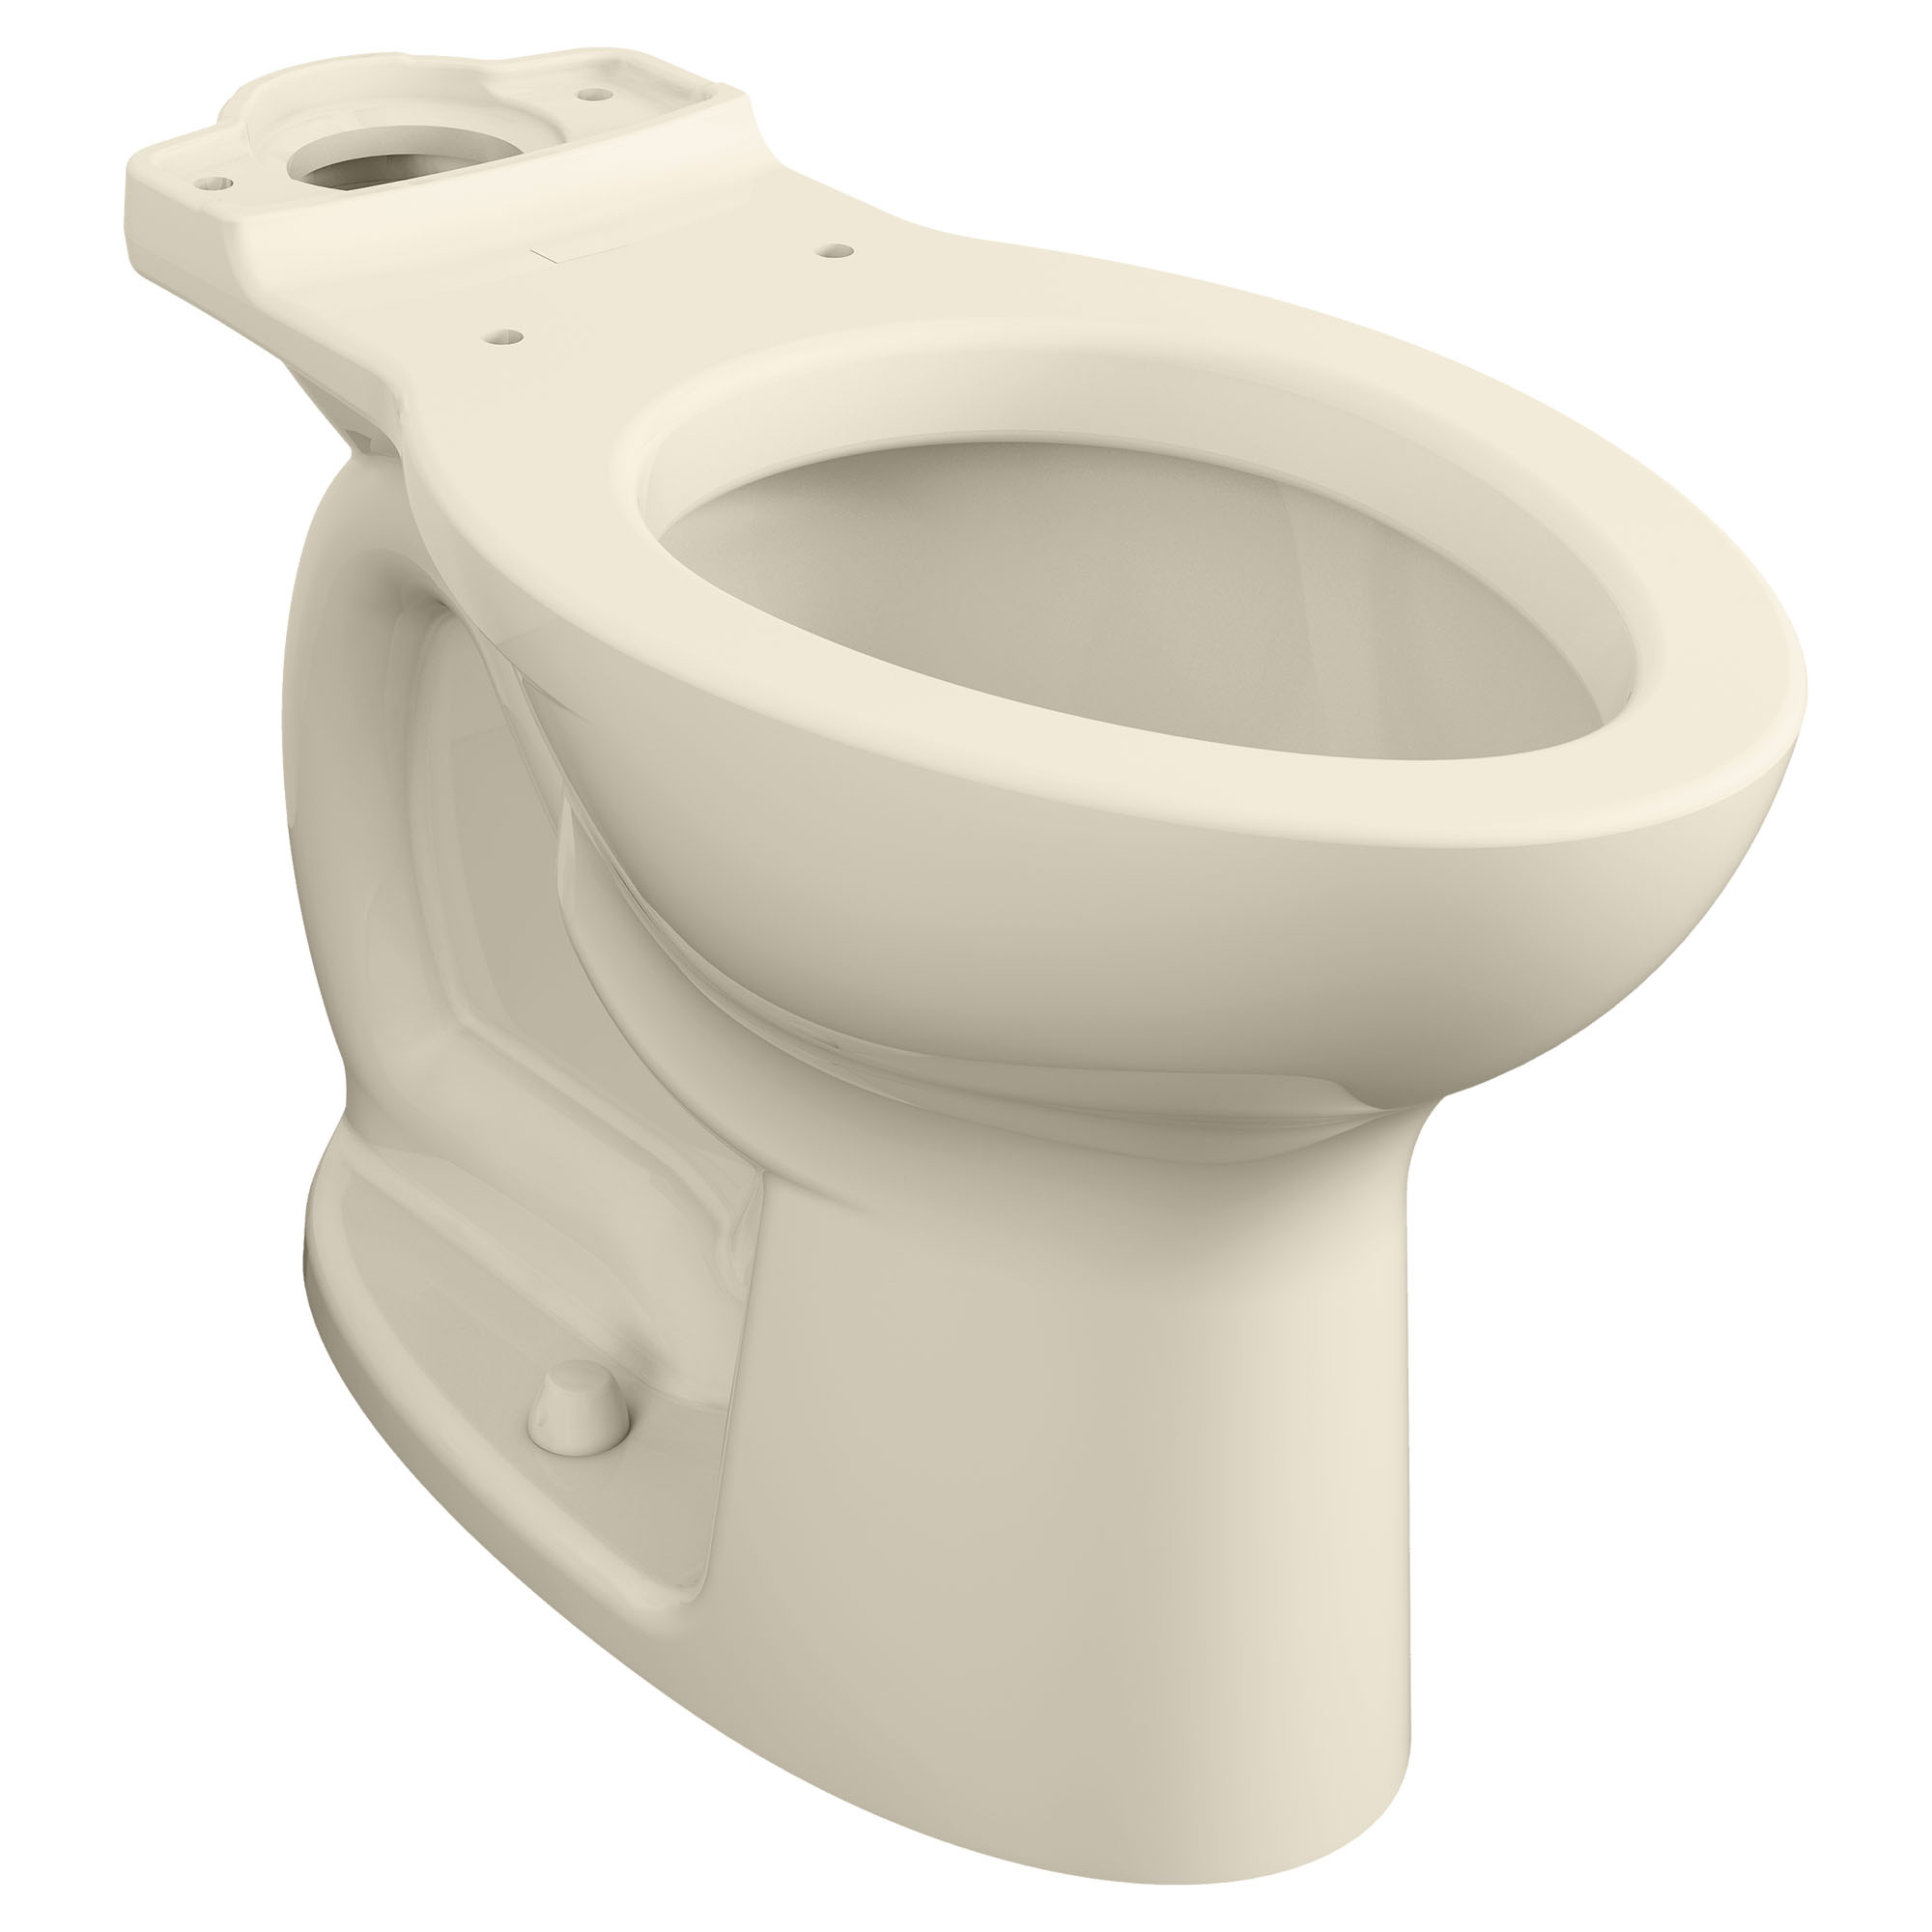 Toilette Cadet PRO, compacte, à cuvette allongée à hauteur de chaise, sans siège